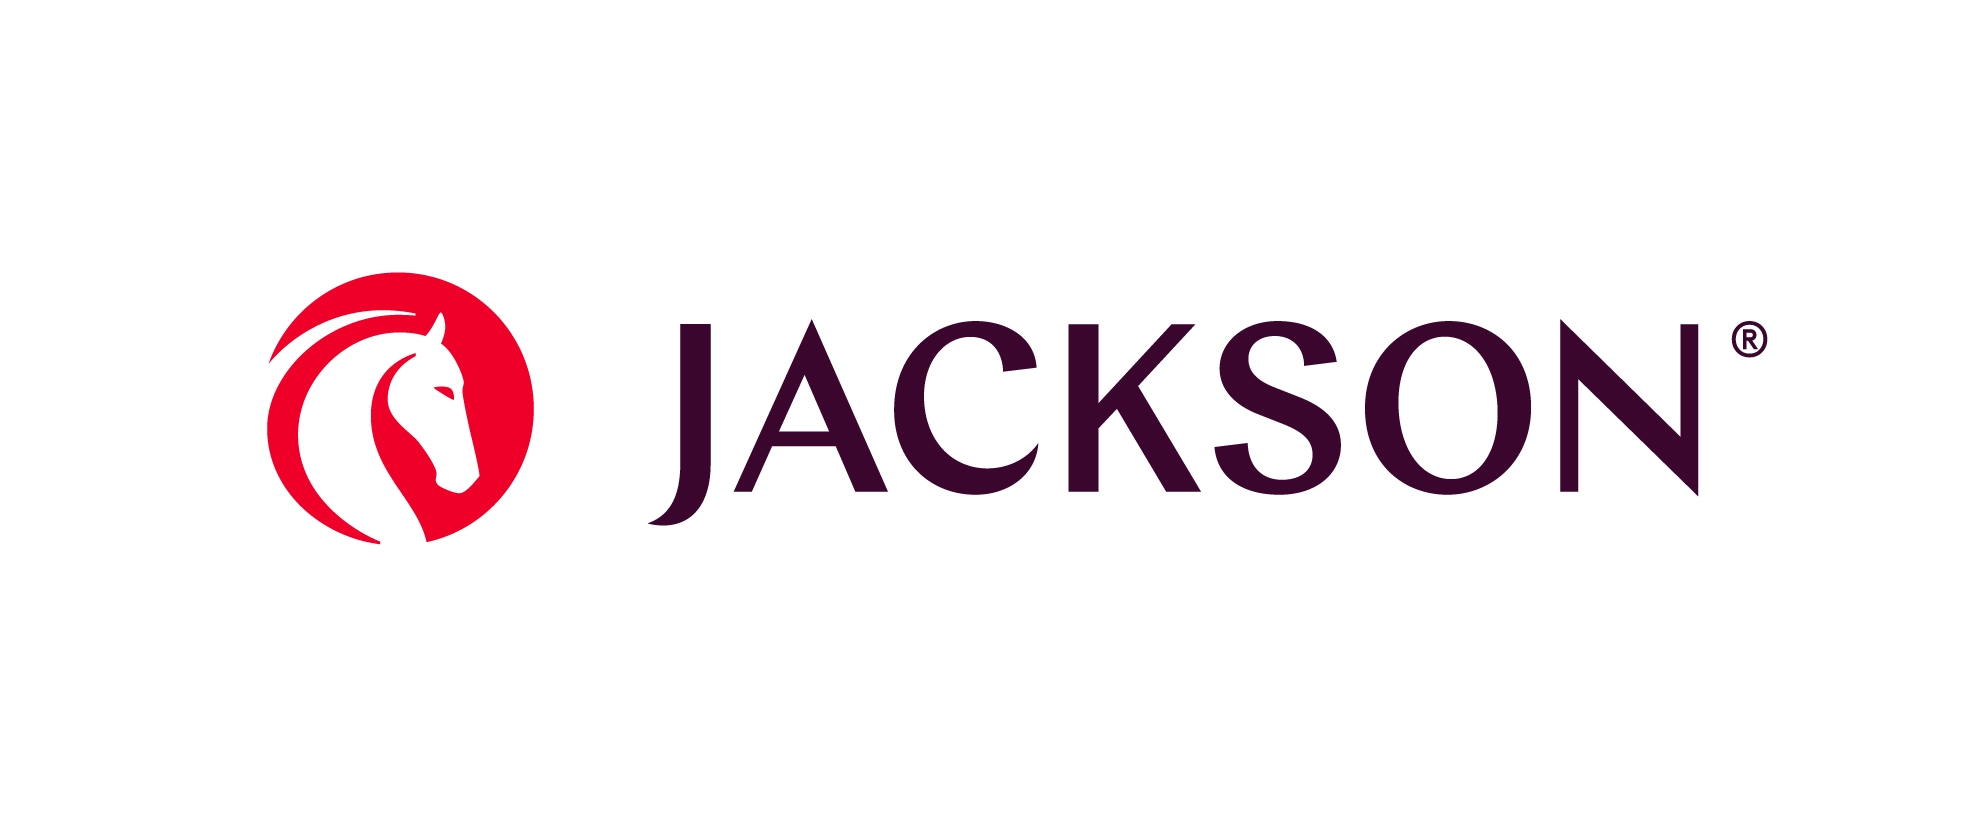 Jackson_logo_reg_col_pos_rgb